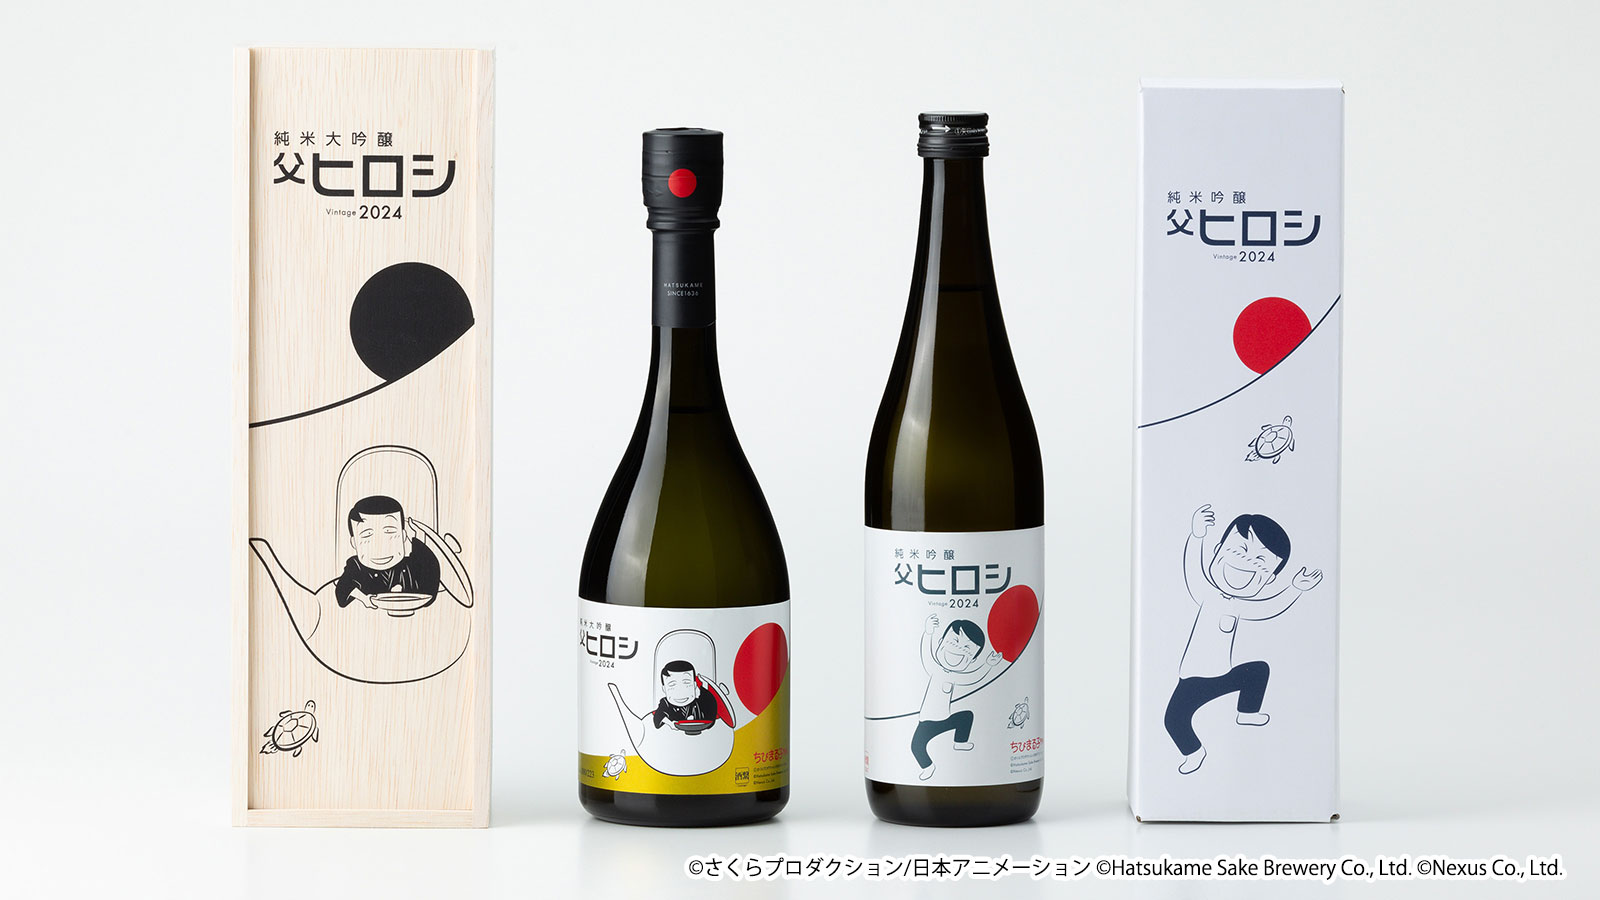 ちびまる子ちゃん × 初亀醸造 コラボ日本酒「父ヒロシ」が今年も発売 